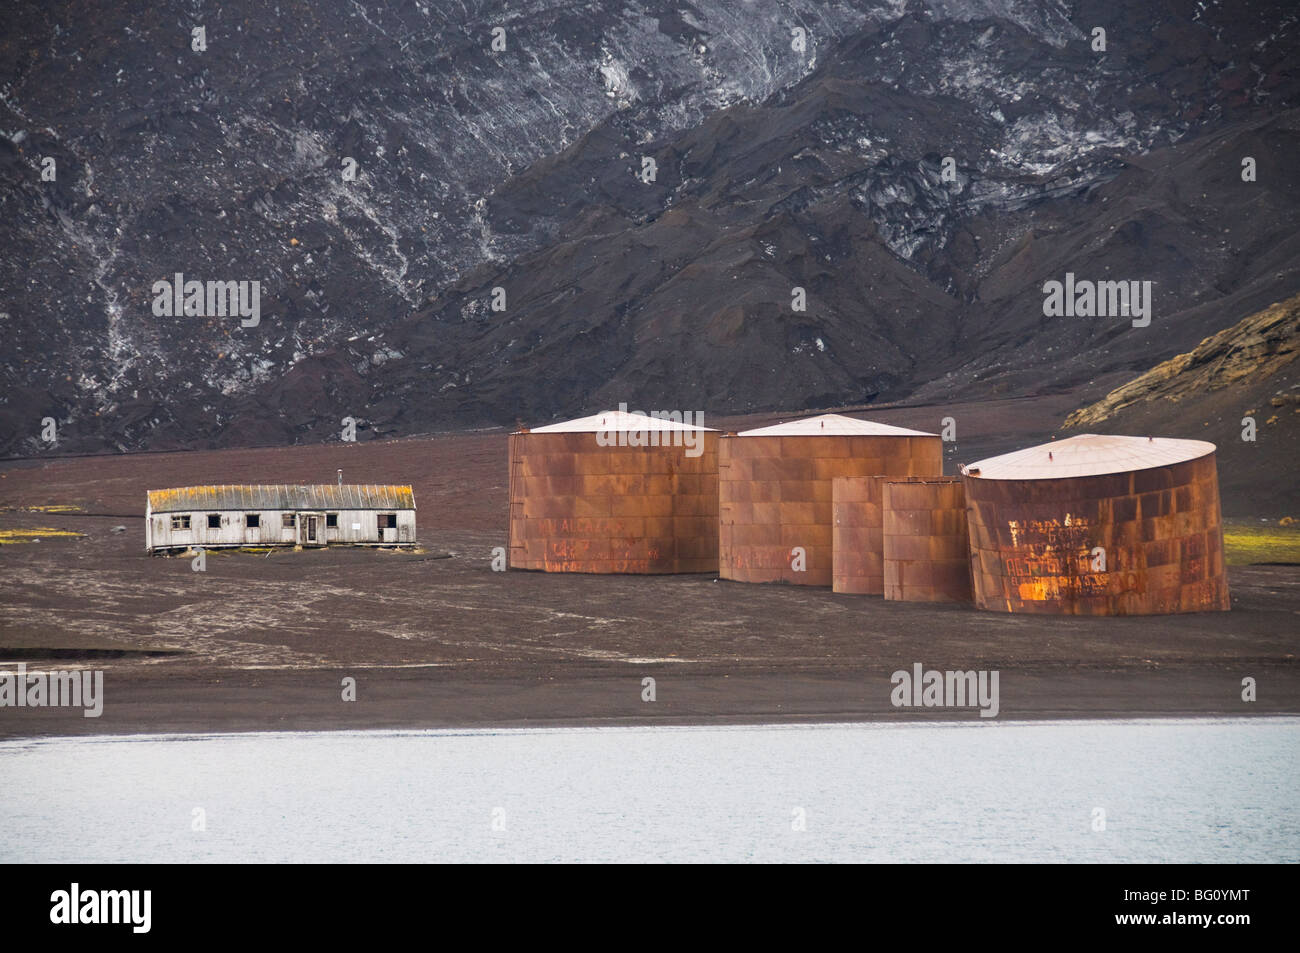 Resti della vecchia Stazione Baleniera, isola Deception, a sud le isole Shetland, Antartide. Le regioni polari Foto Stock